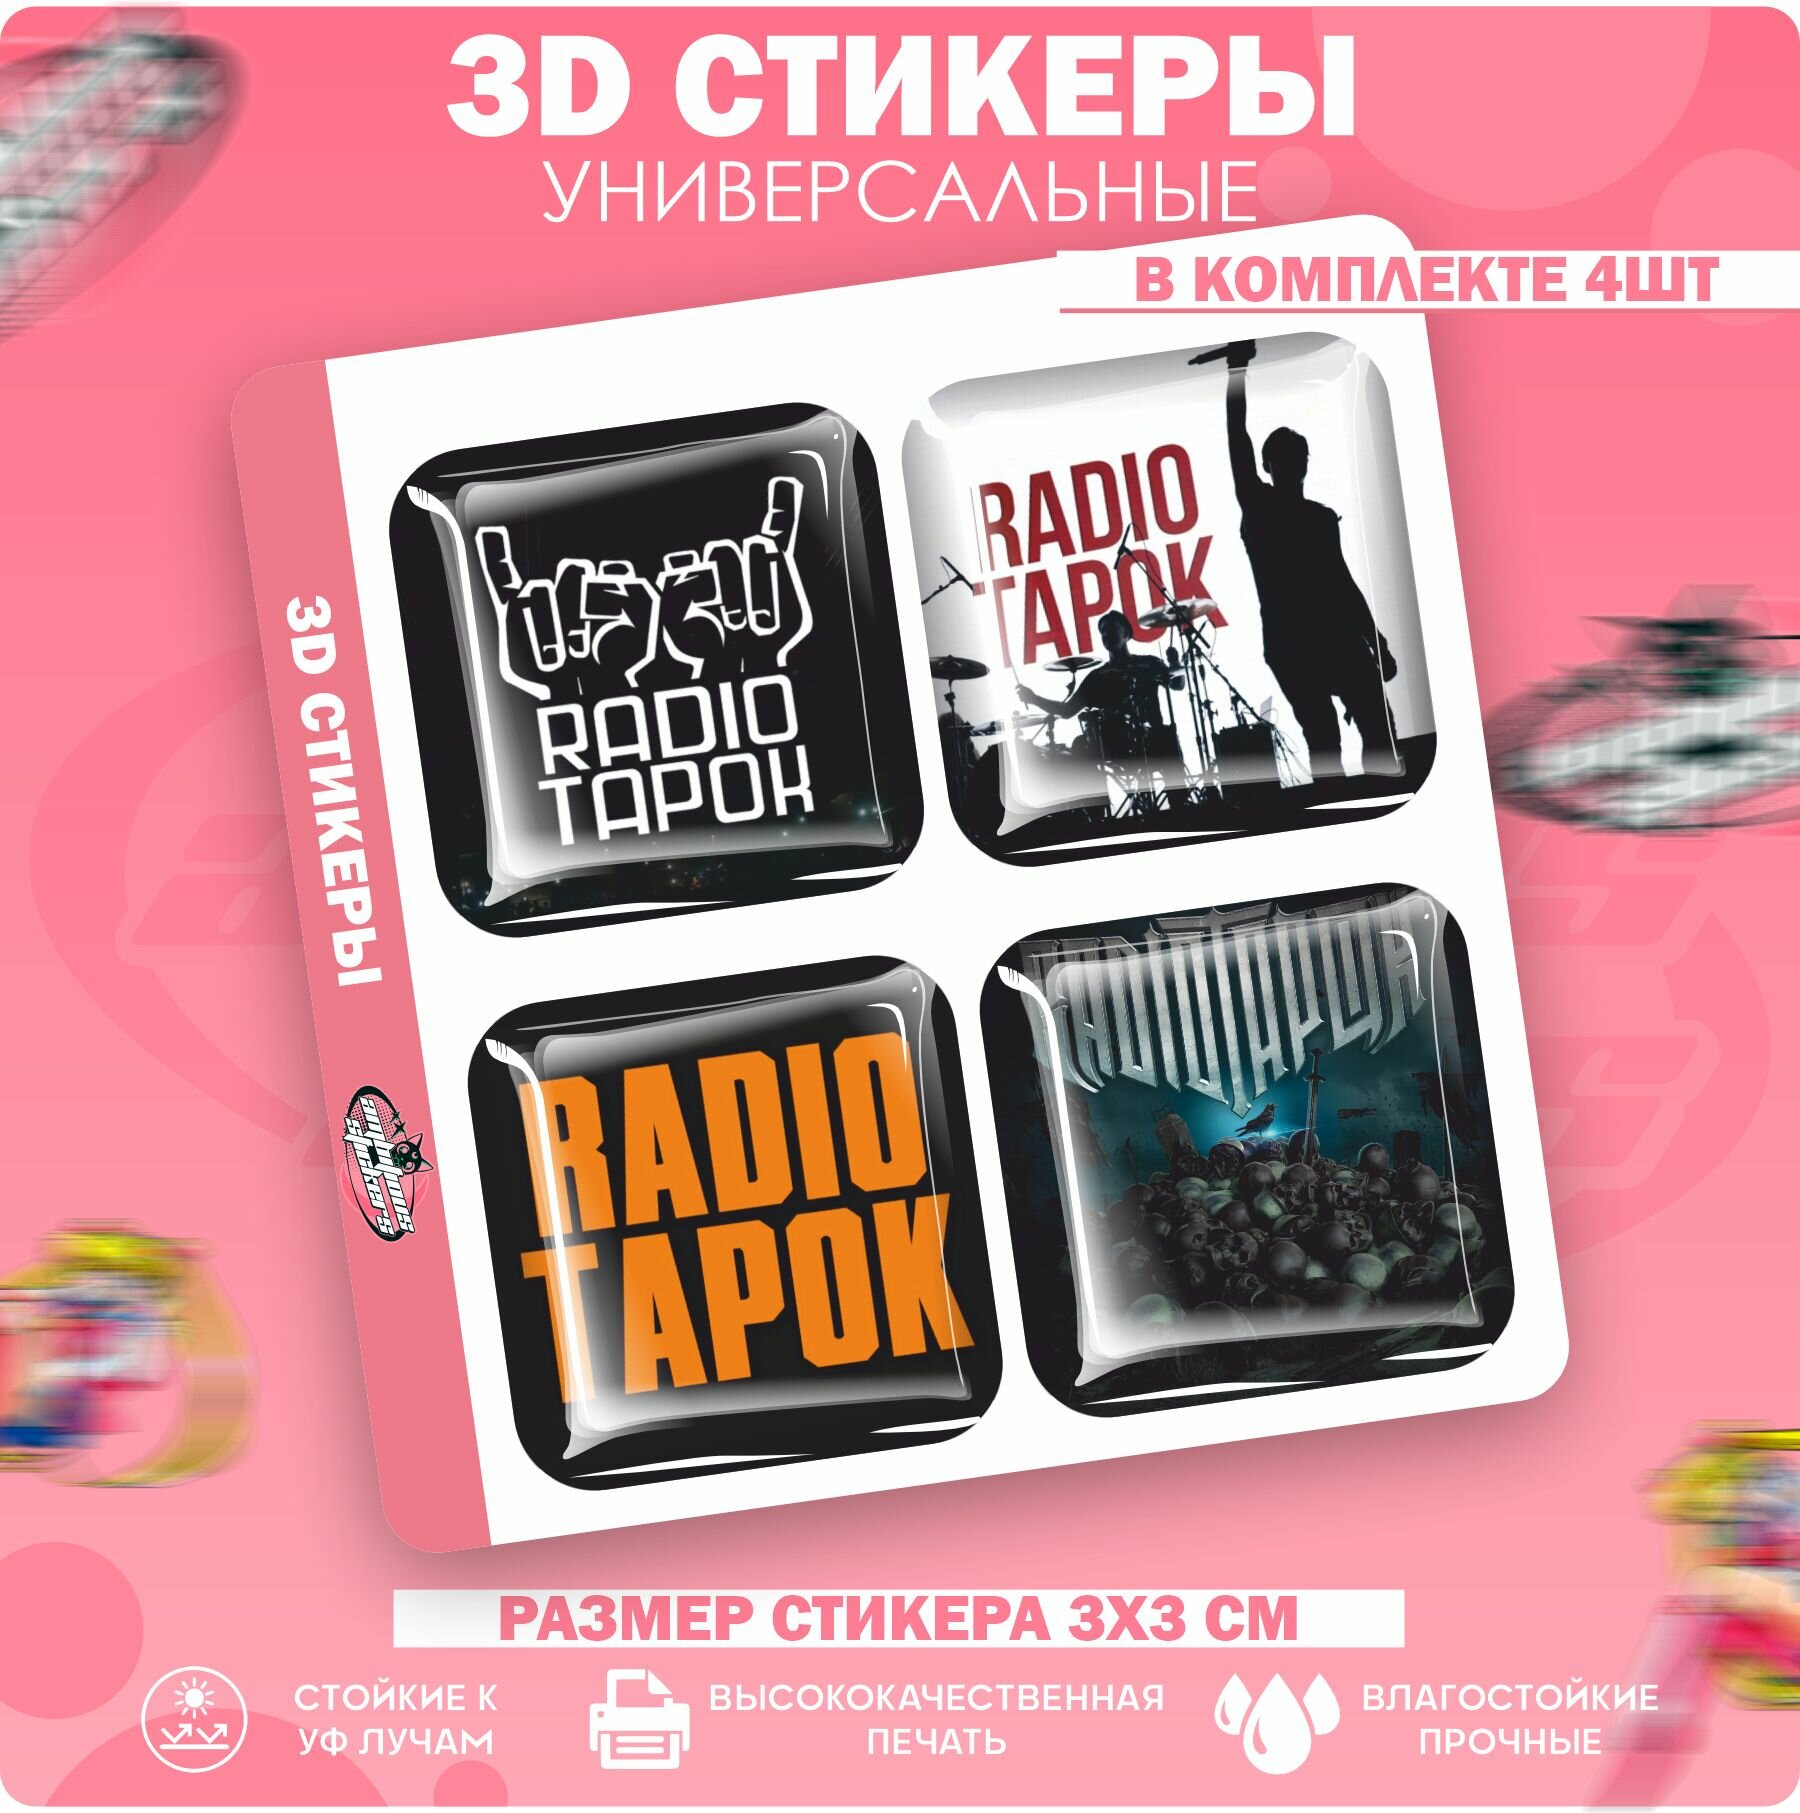 3D стикеры наклейки на телефон RADIO TAPOK